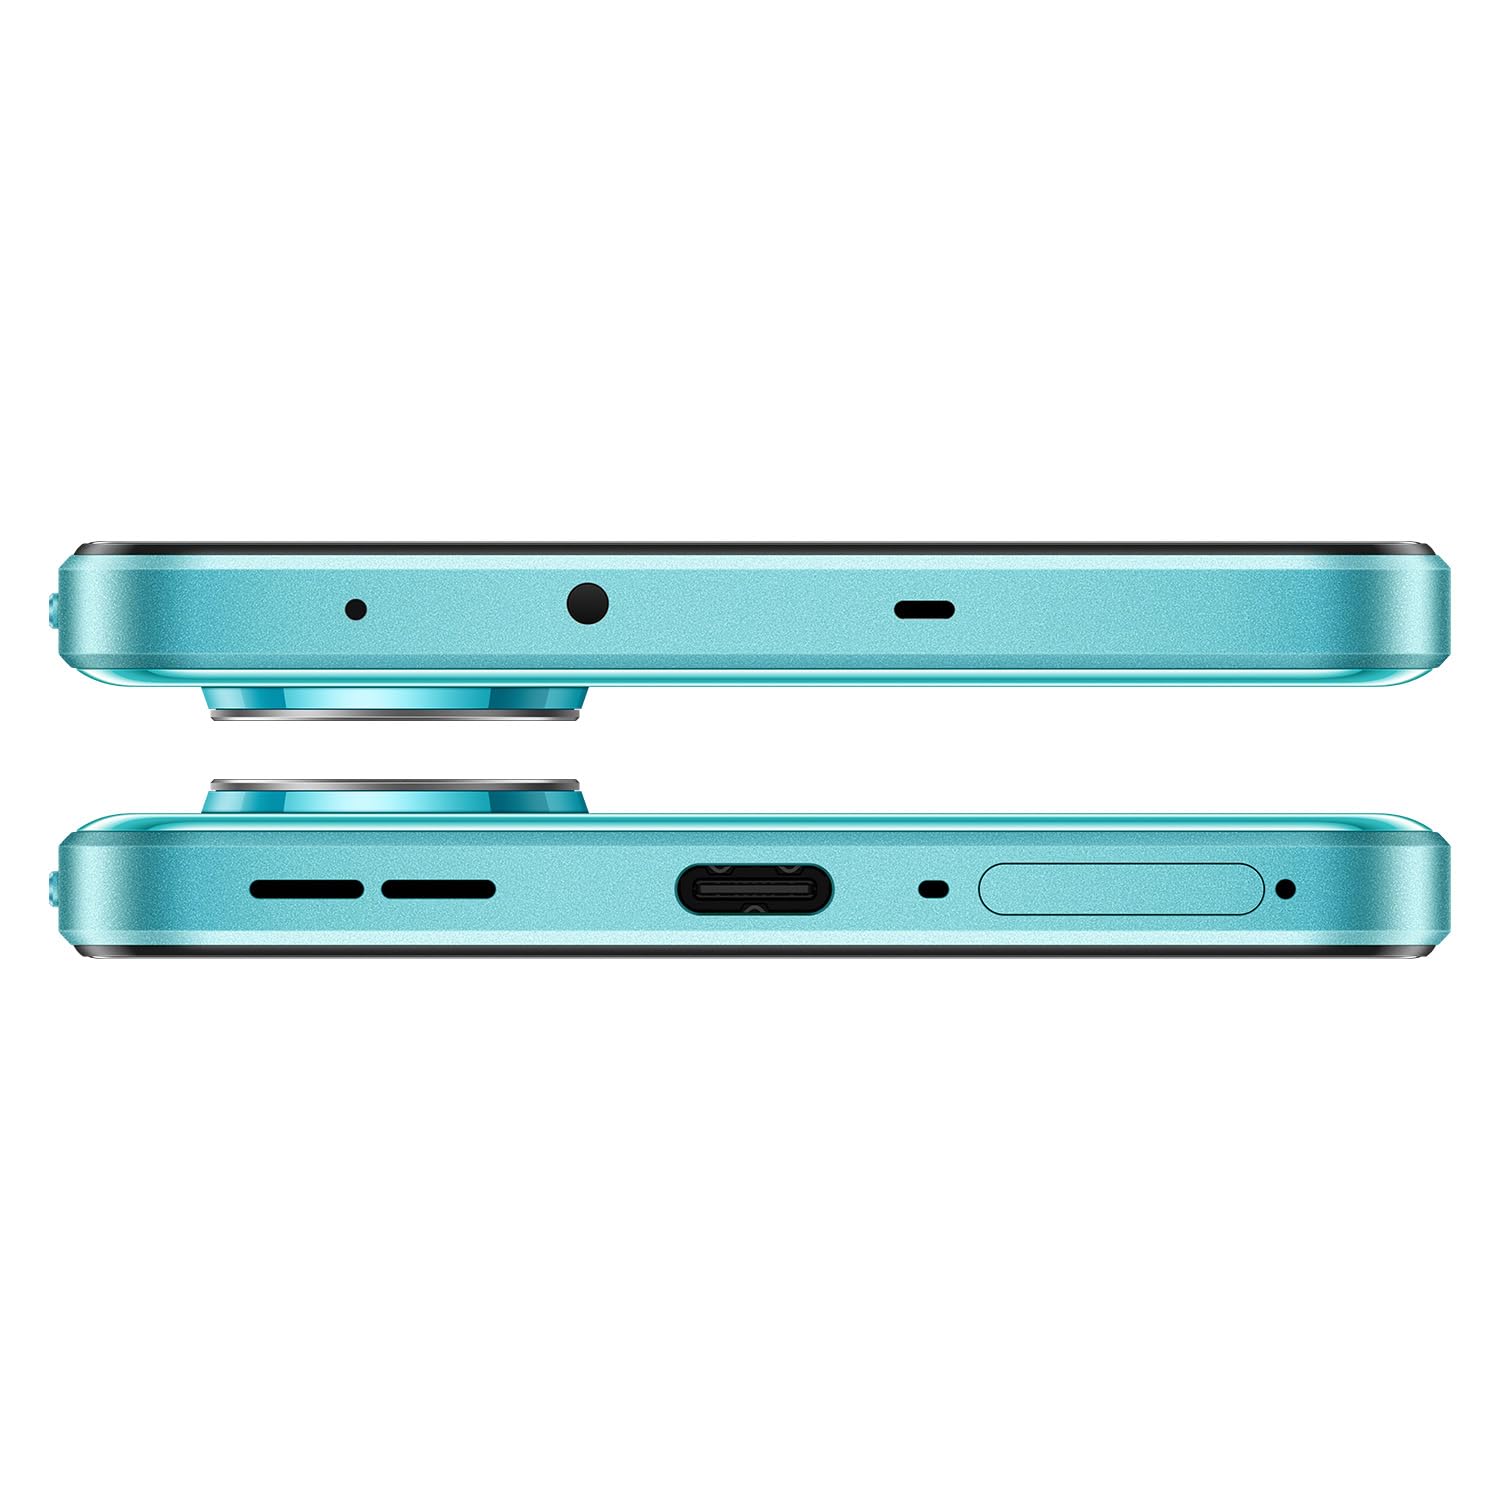 OnePlus Nord CE 3 Lite 5G ( 128 GB Storage, 8 GB RAM ) Online at